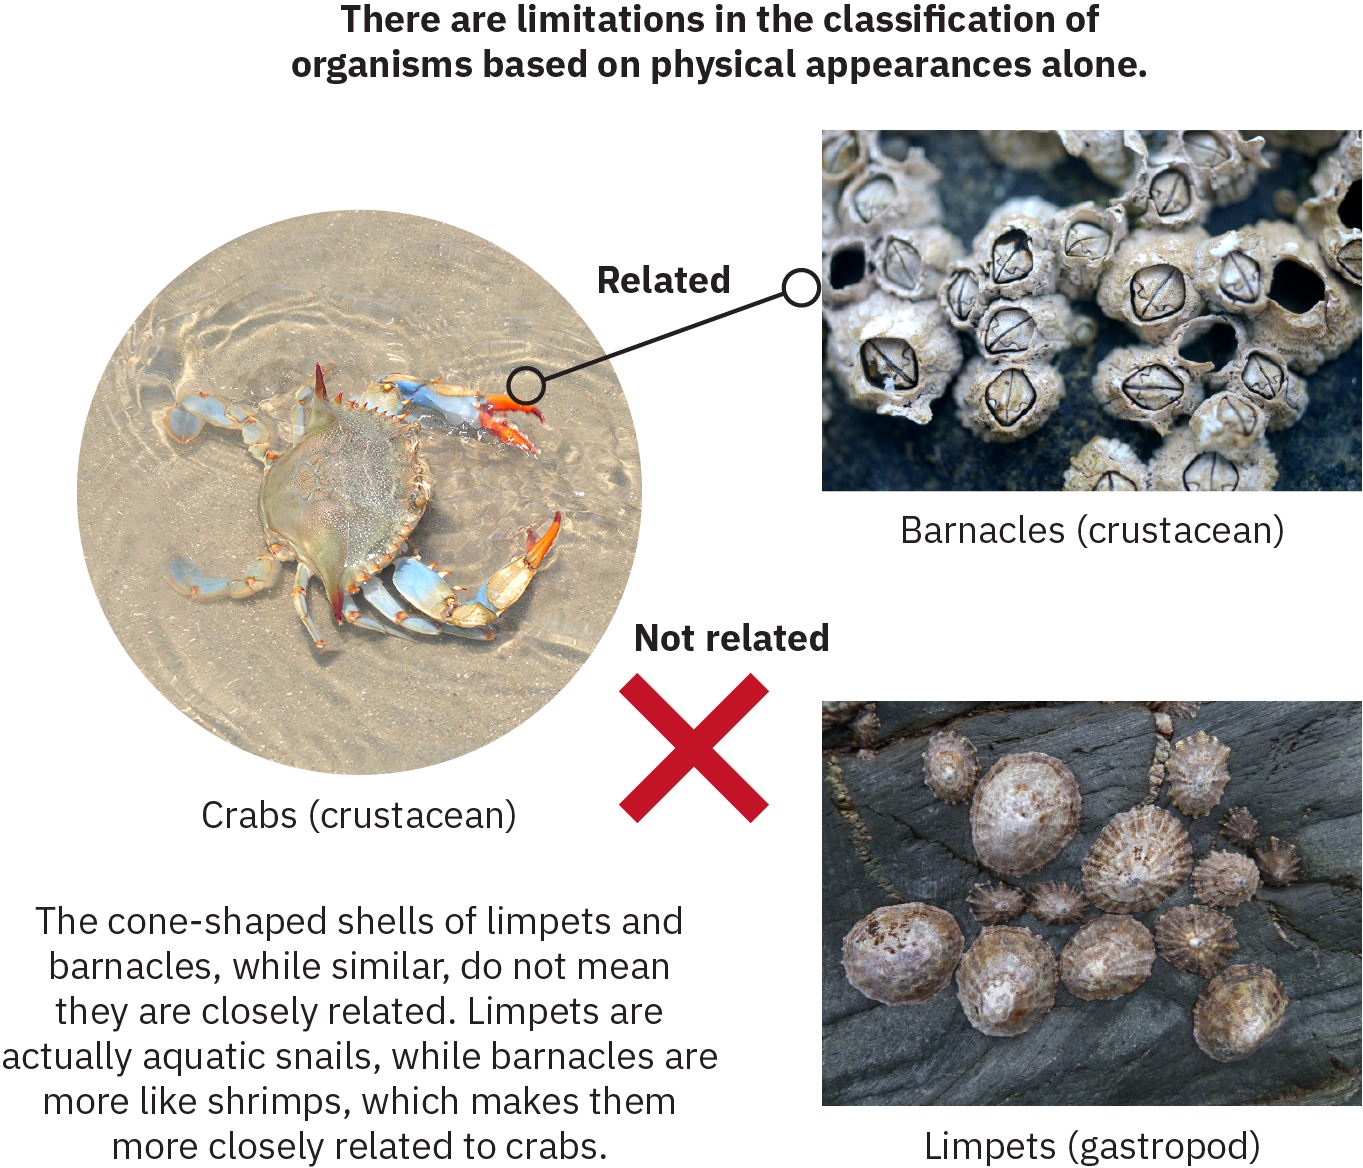 信息图包含三个主要部分：藤壶、螃蟹和帽贝。 被识别为甲壳类动物的藤壶和被识别为腹足动物的帽贝具有相似的形态——两者都是一小群带有硬壳的生物。 螃蟹。也被确定为甲壳类动物，有明显的腿和大钳子。 螃蟹和藤壶之间的一条线被标记为 “相关”。 帽贝和螃蟹之间出现一个 X，上面写着 “不相关” 字样。 图片上的文字写着：“帽贝和藤壶的锥形外壳虽然相似，但并不意味着它们密切相关。 帽贝实际上是水生蜗牛，而藤壶更像虾，这使得它们与螃蟹的关系更加密切。”